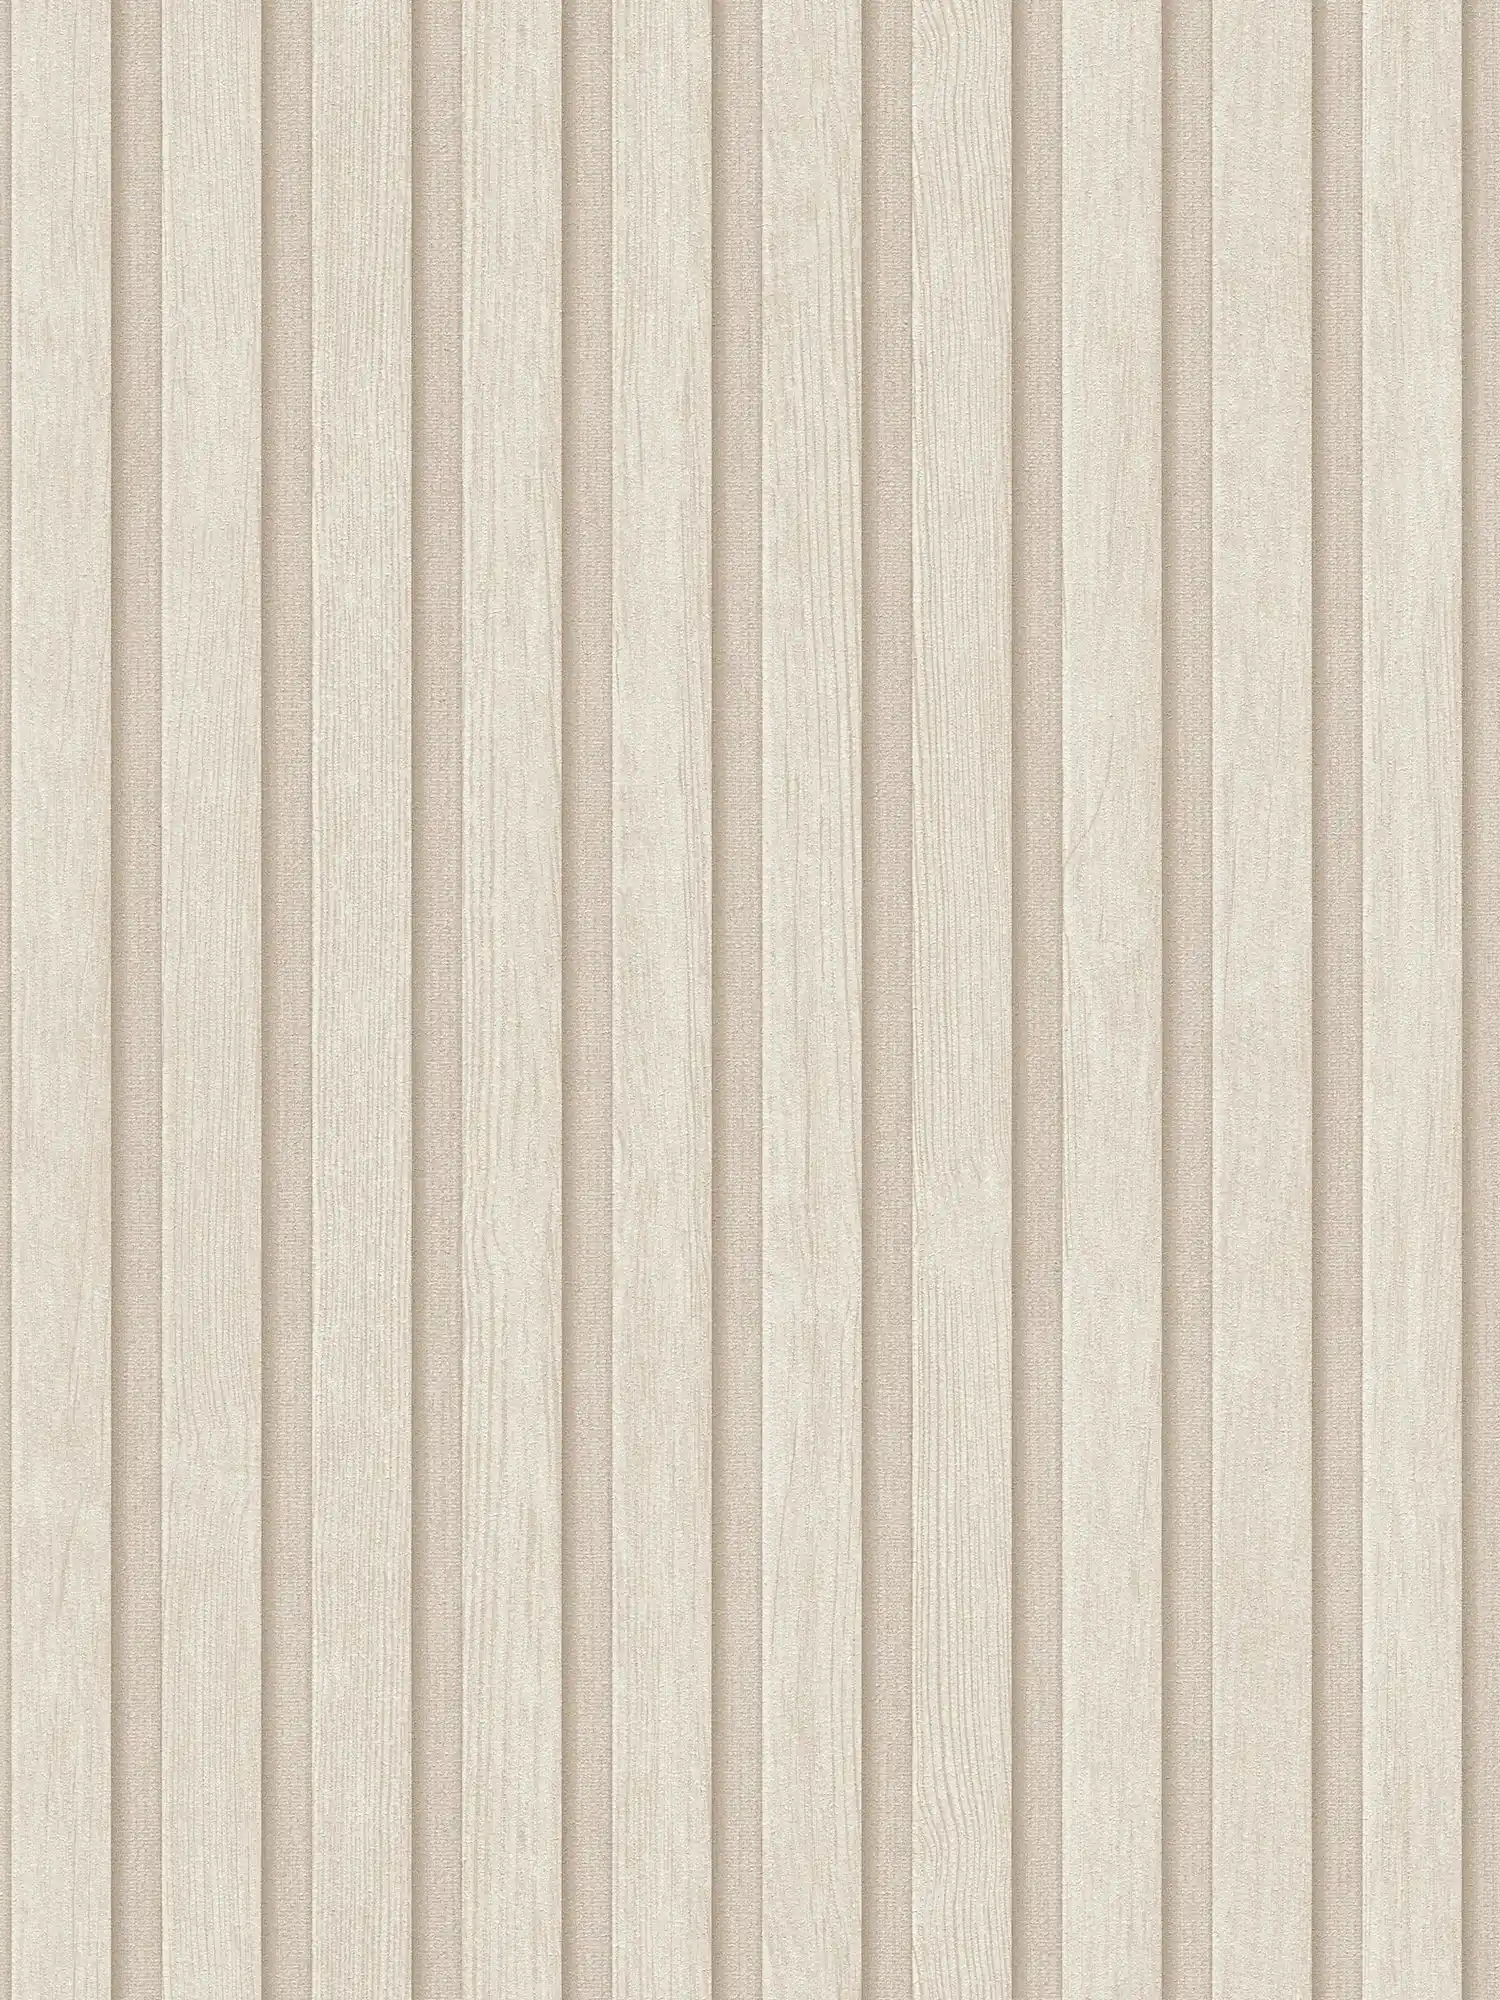 Vliesbehang met houteffect akoestische paneel look - crème, beige
